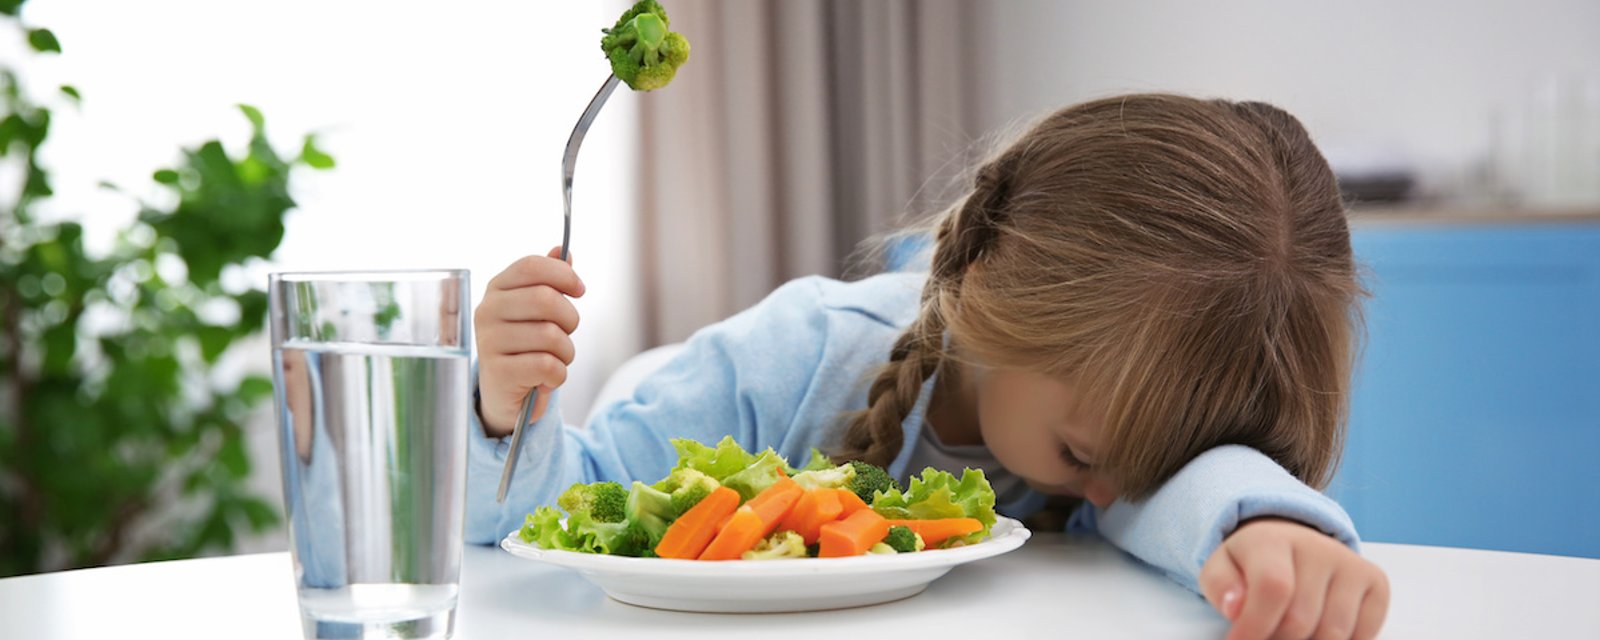 6 conseils pour que les repas en famille ne se transforment pas en combats!